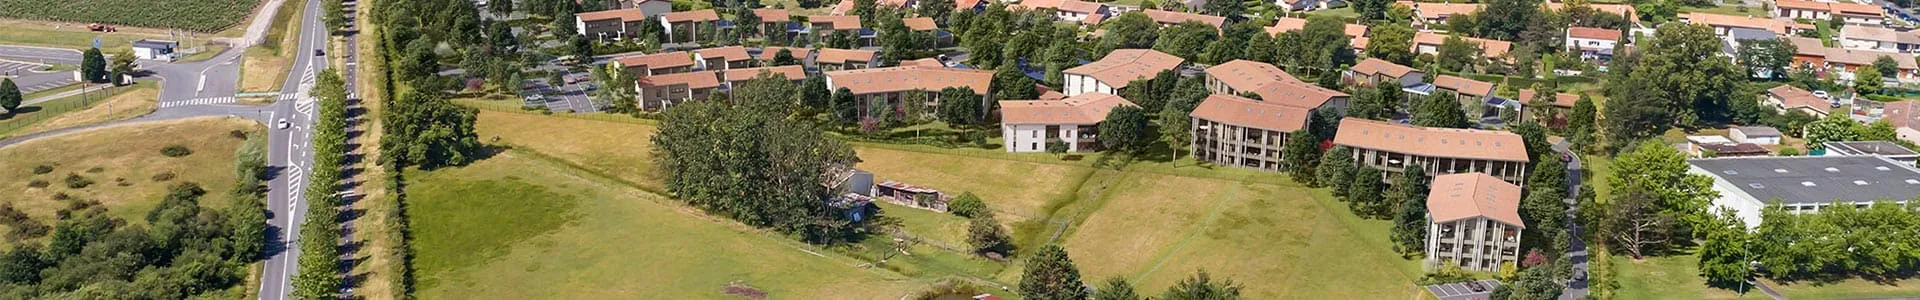 Vue aérienne du quartier autour de la résidence Les Jardins de Margaux